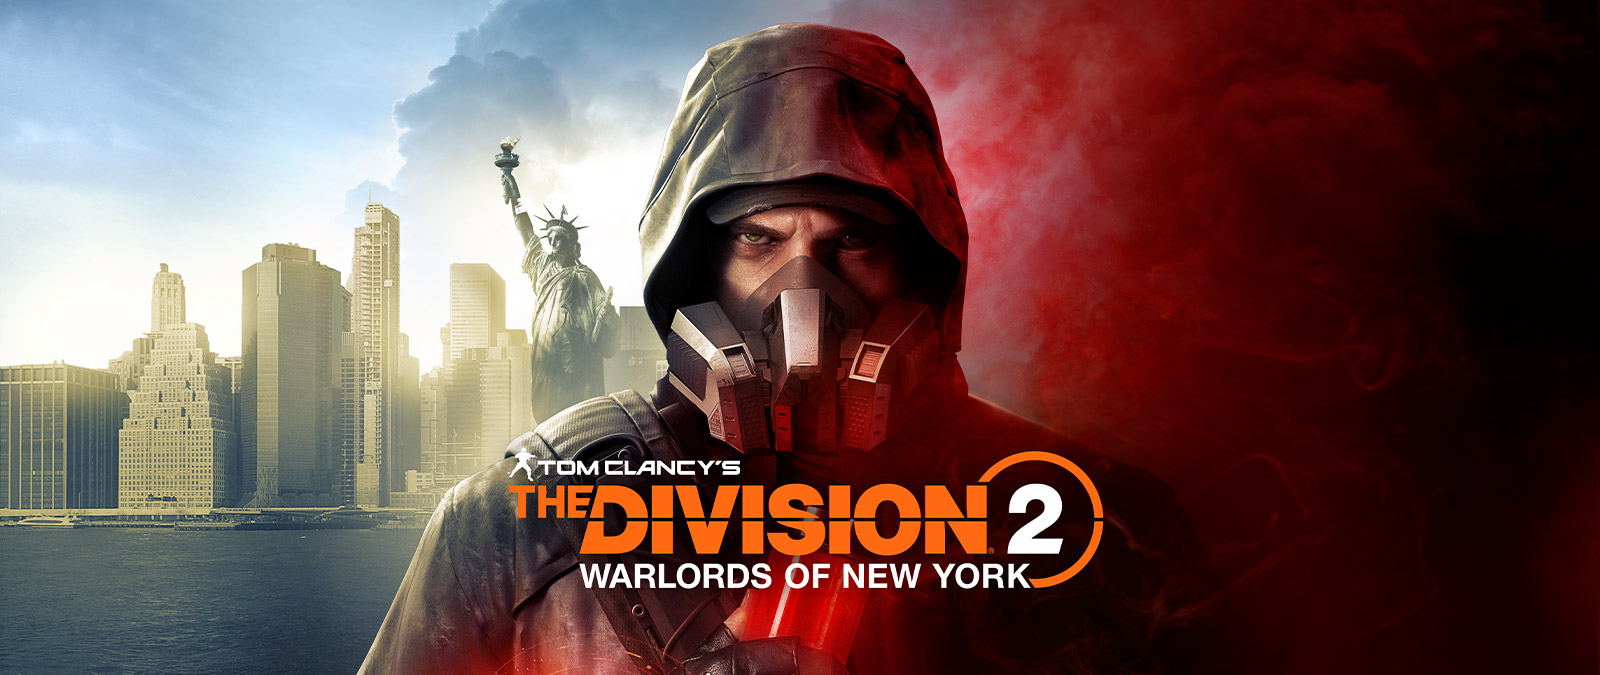 Tom Clancy's The Division 2 Warlords of New York, Aaron Keener met een gasmasker voor het Vrijheidsbeeld